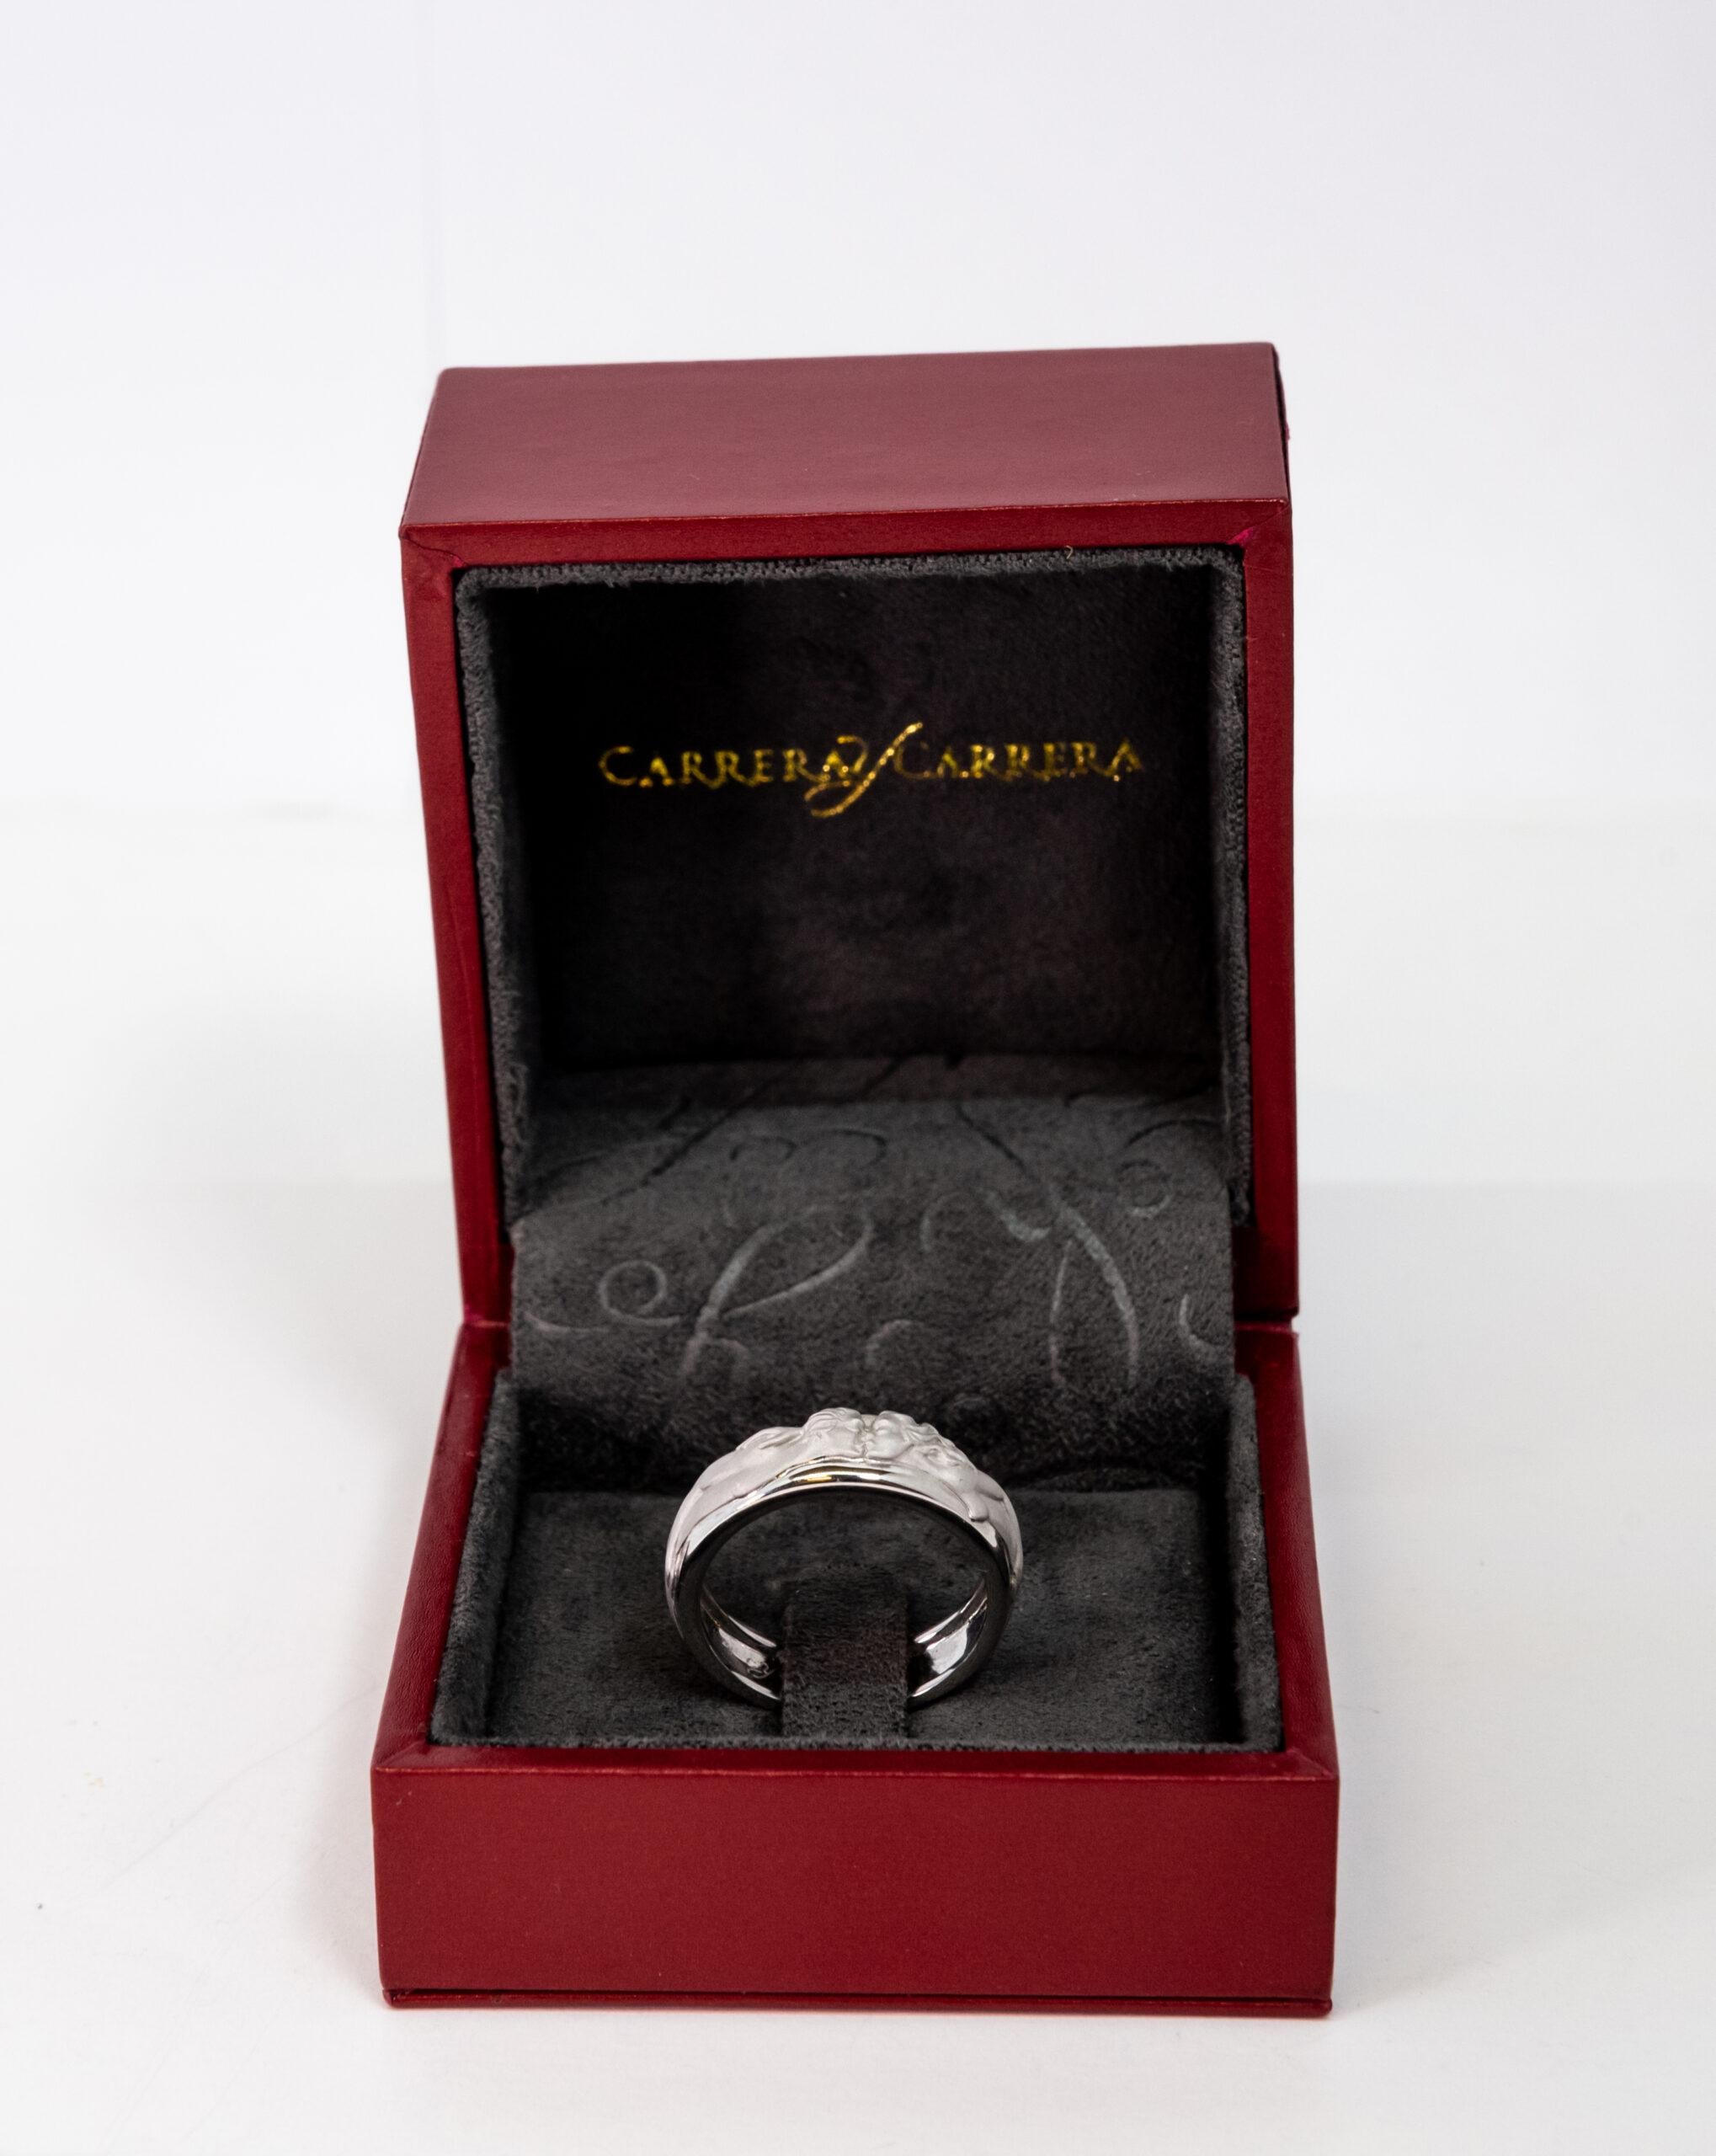 Carrara Y Carrara Promesa 18k White Gold Ring, 10076581 In New Condition For Sale In North Miami Beach, FL